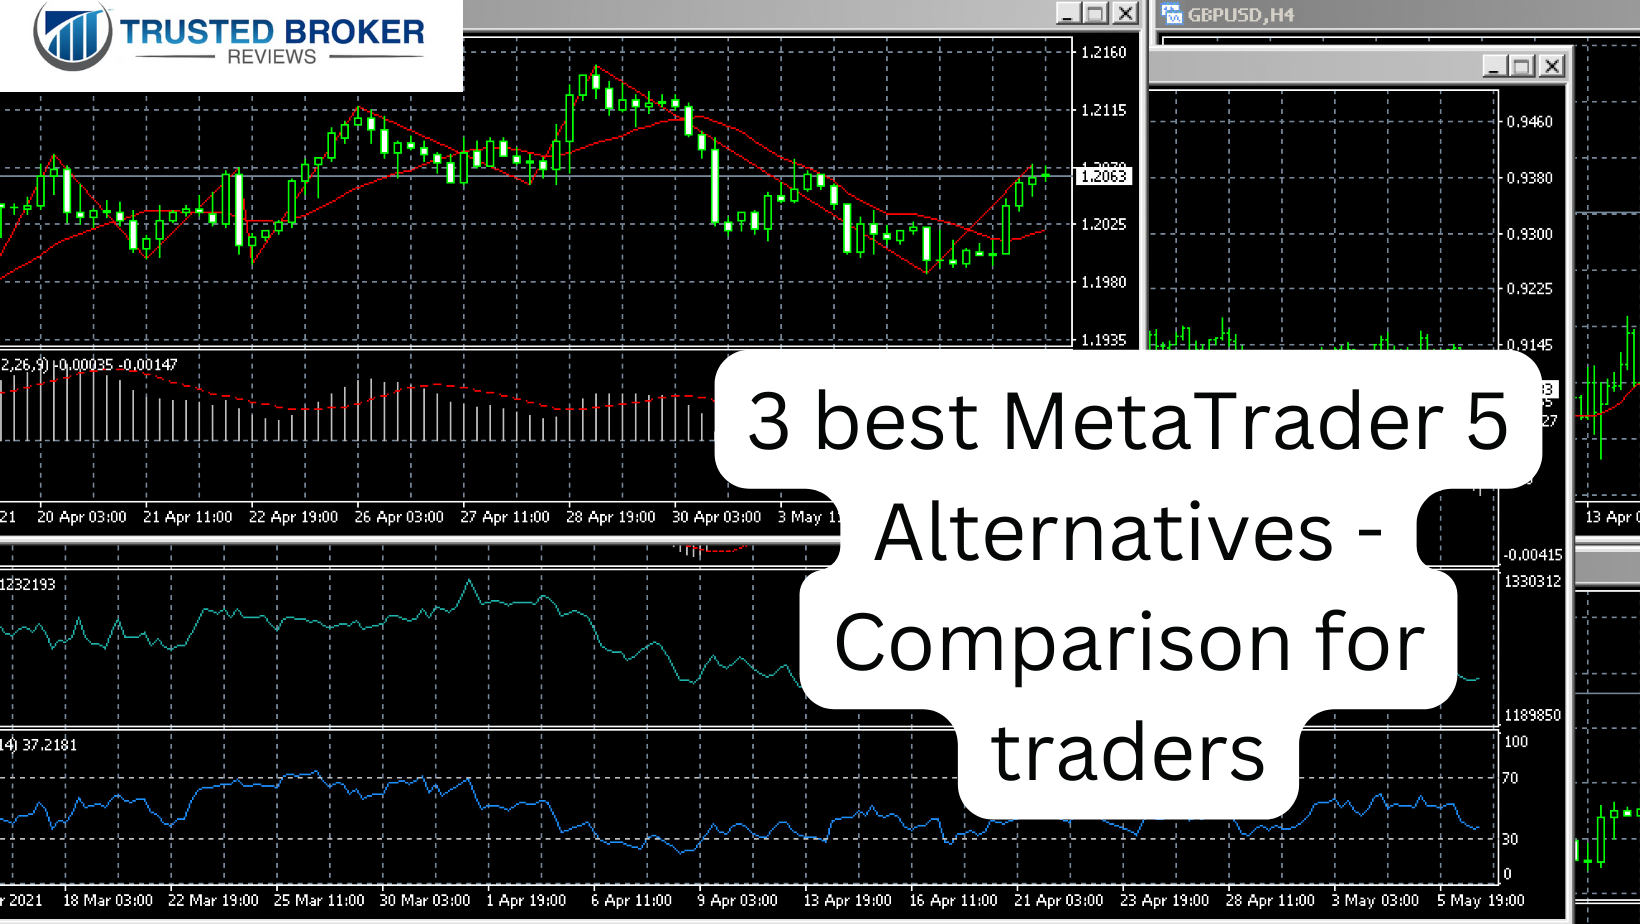 3 bedste MetaTrader 5 Alternativer - Sammenligning for handlende